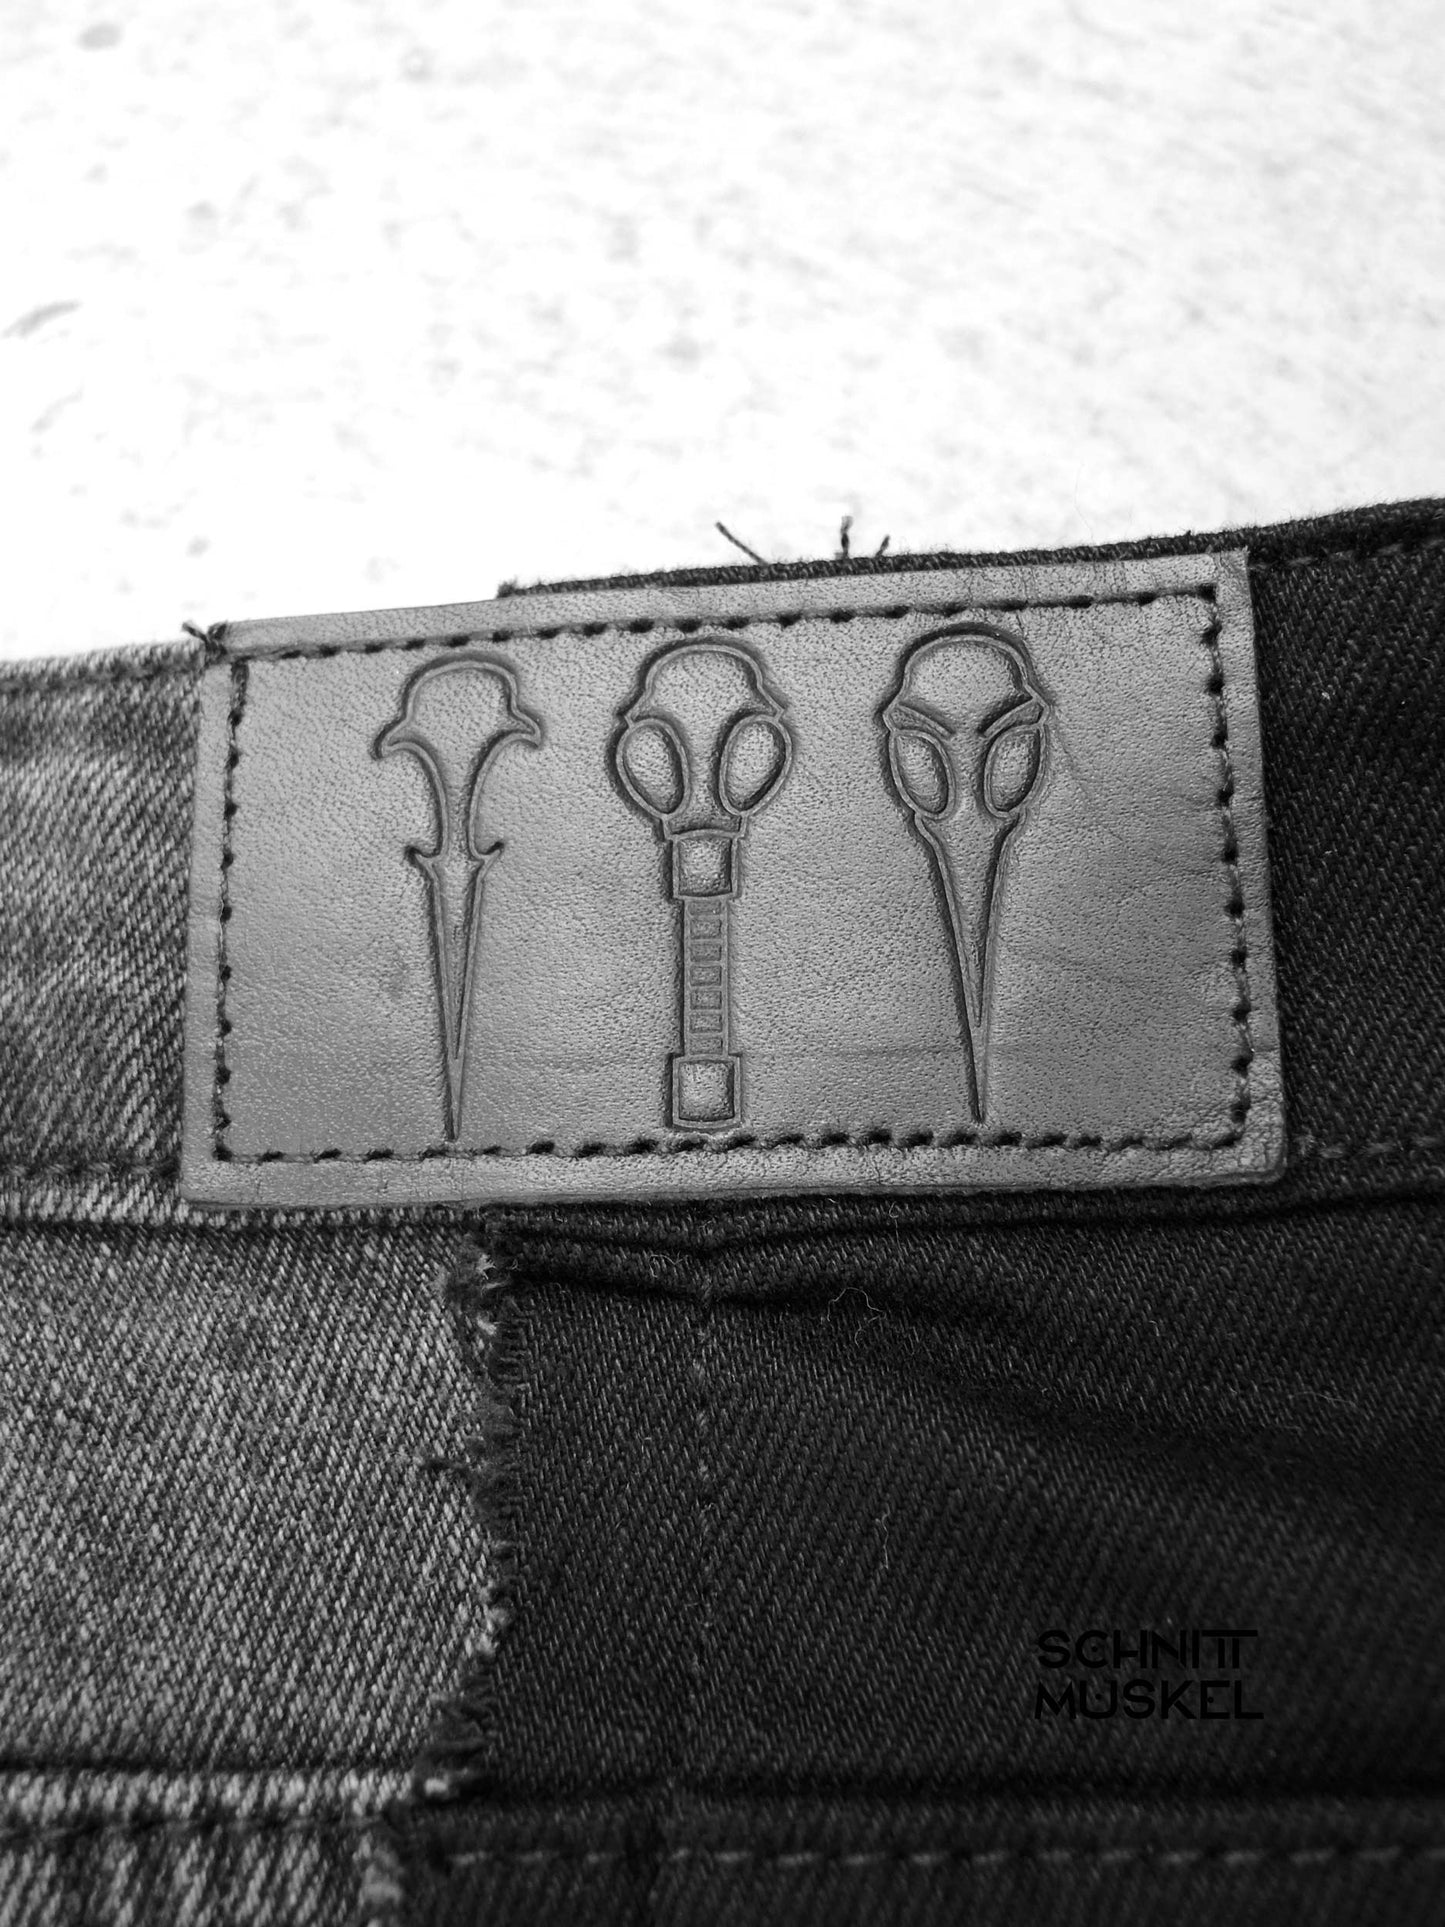 patchwork Jeans, upcycling jeans, Gothicjeans, Gothicmode für Männer, postapokalyptische Mode, Cyberjeans, Cyberhose, Hose mit Gurten, aussergewöhnliche Jeans